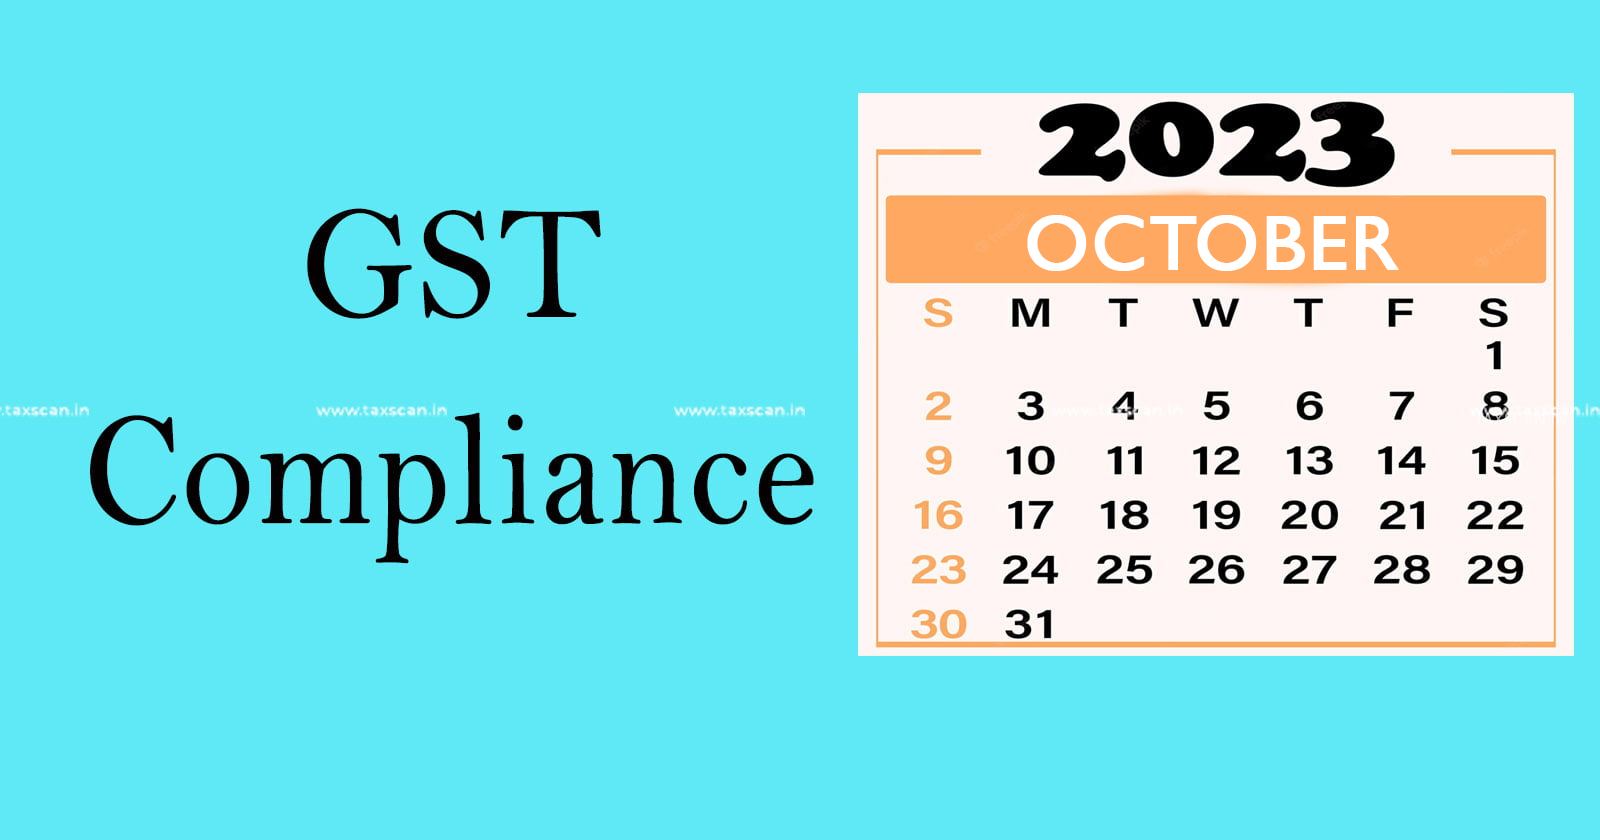 GST - GST Compliance Calendar - Compliance - Calendar - GST Compliance Calendar for October 2023 - taxscan